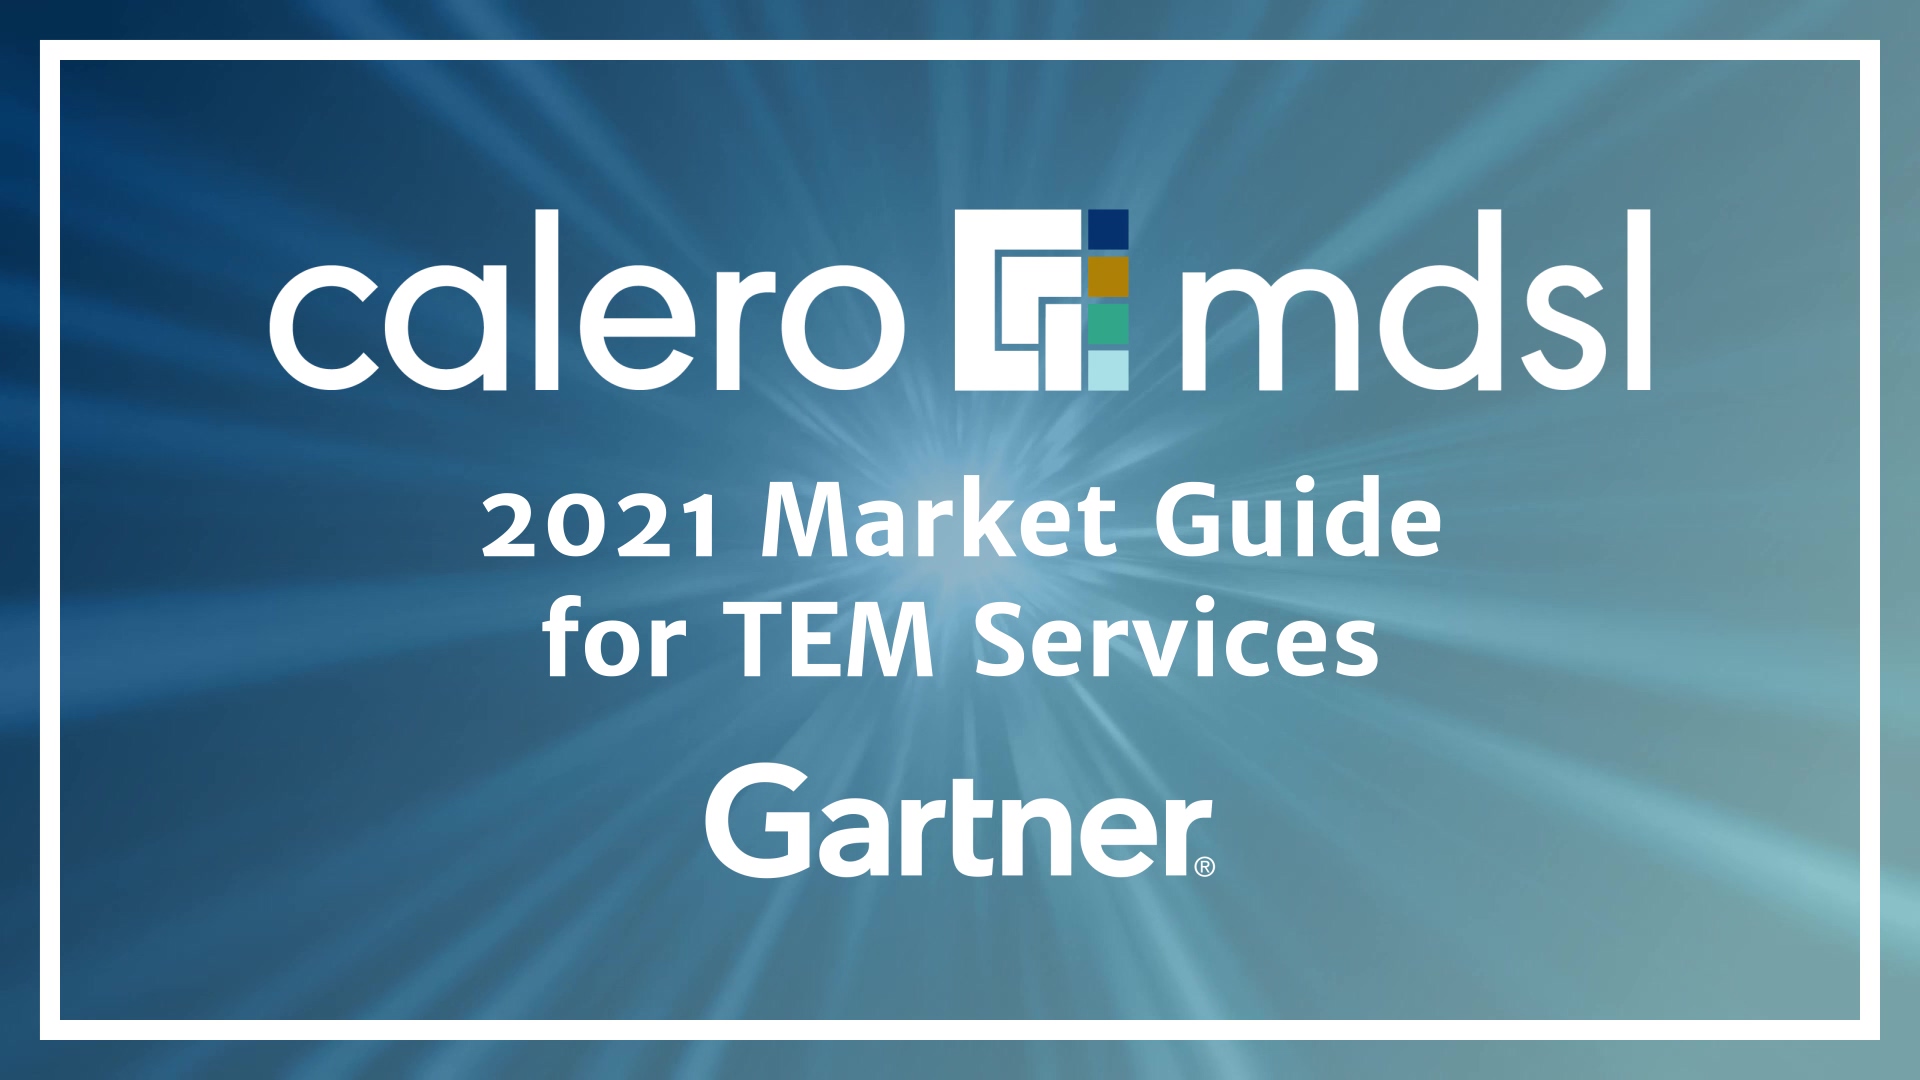 Calero-MDSL Video - Gartner 2021 Market Guide for TEM Services